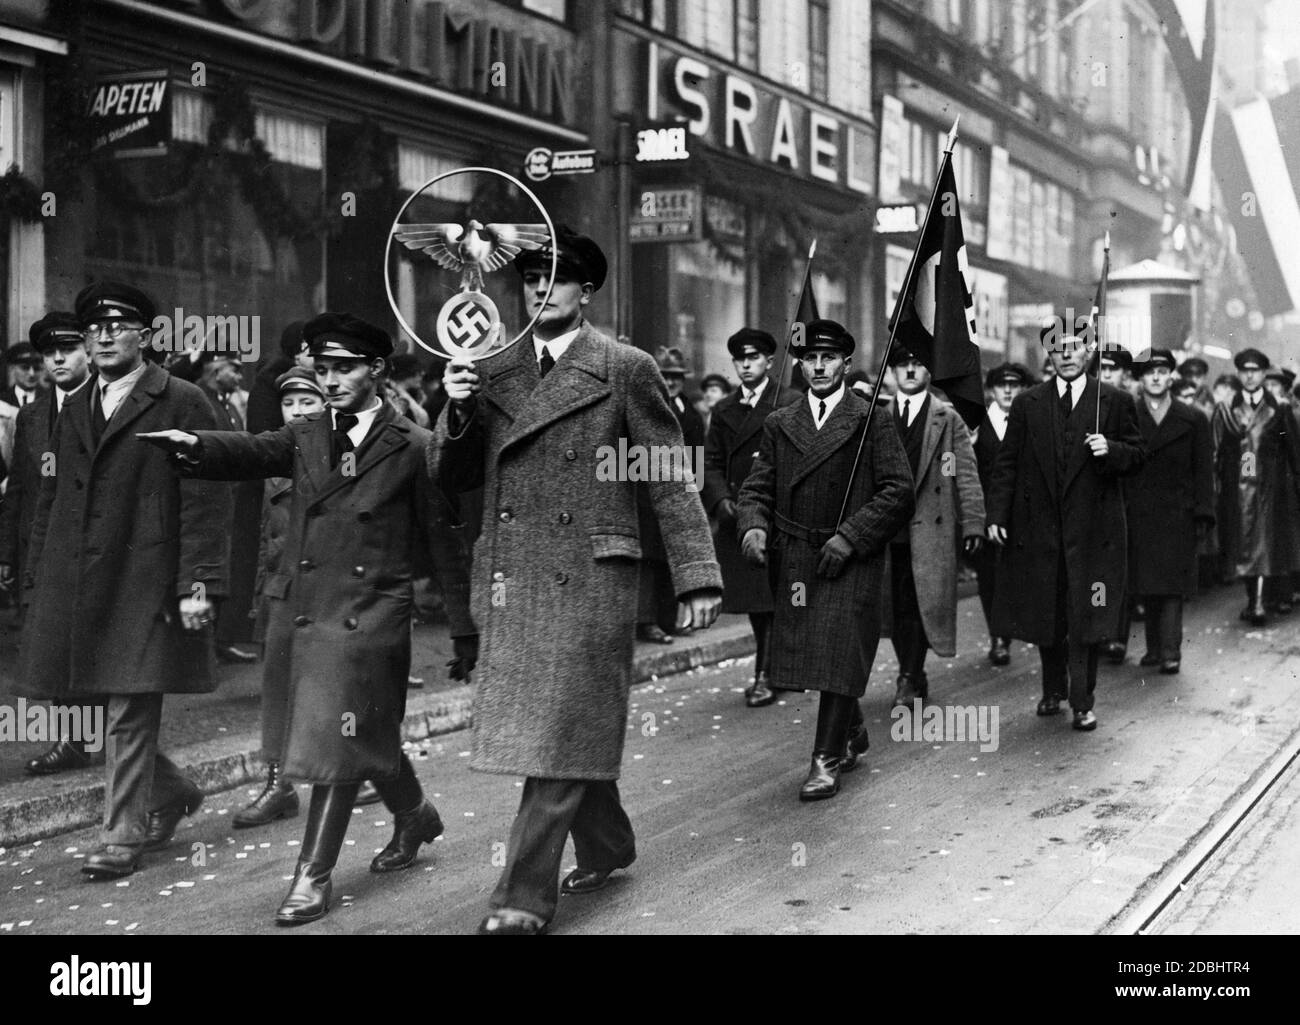 Dopo il referendum sull'annessione della Saarland al Reich tedesco, gli uomini marciano per le strade di Saarbruecken con bandiere swastika e simboli sovrani del Reich. Foto Stock